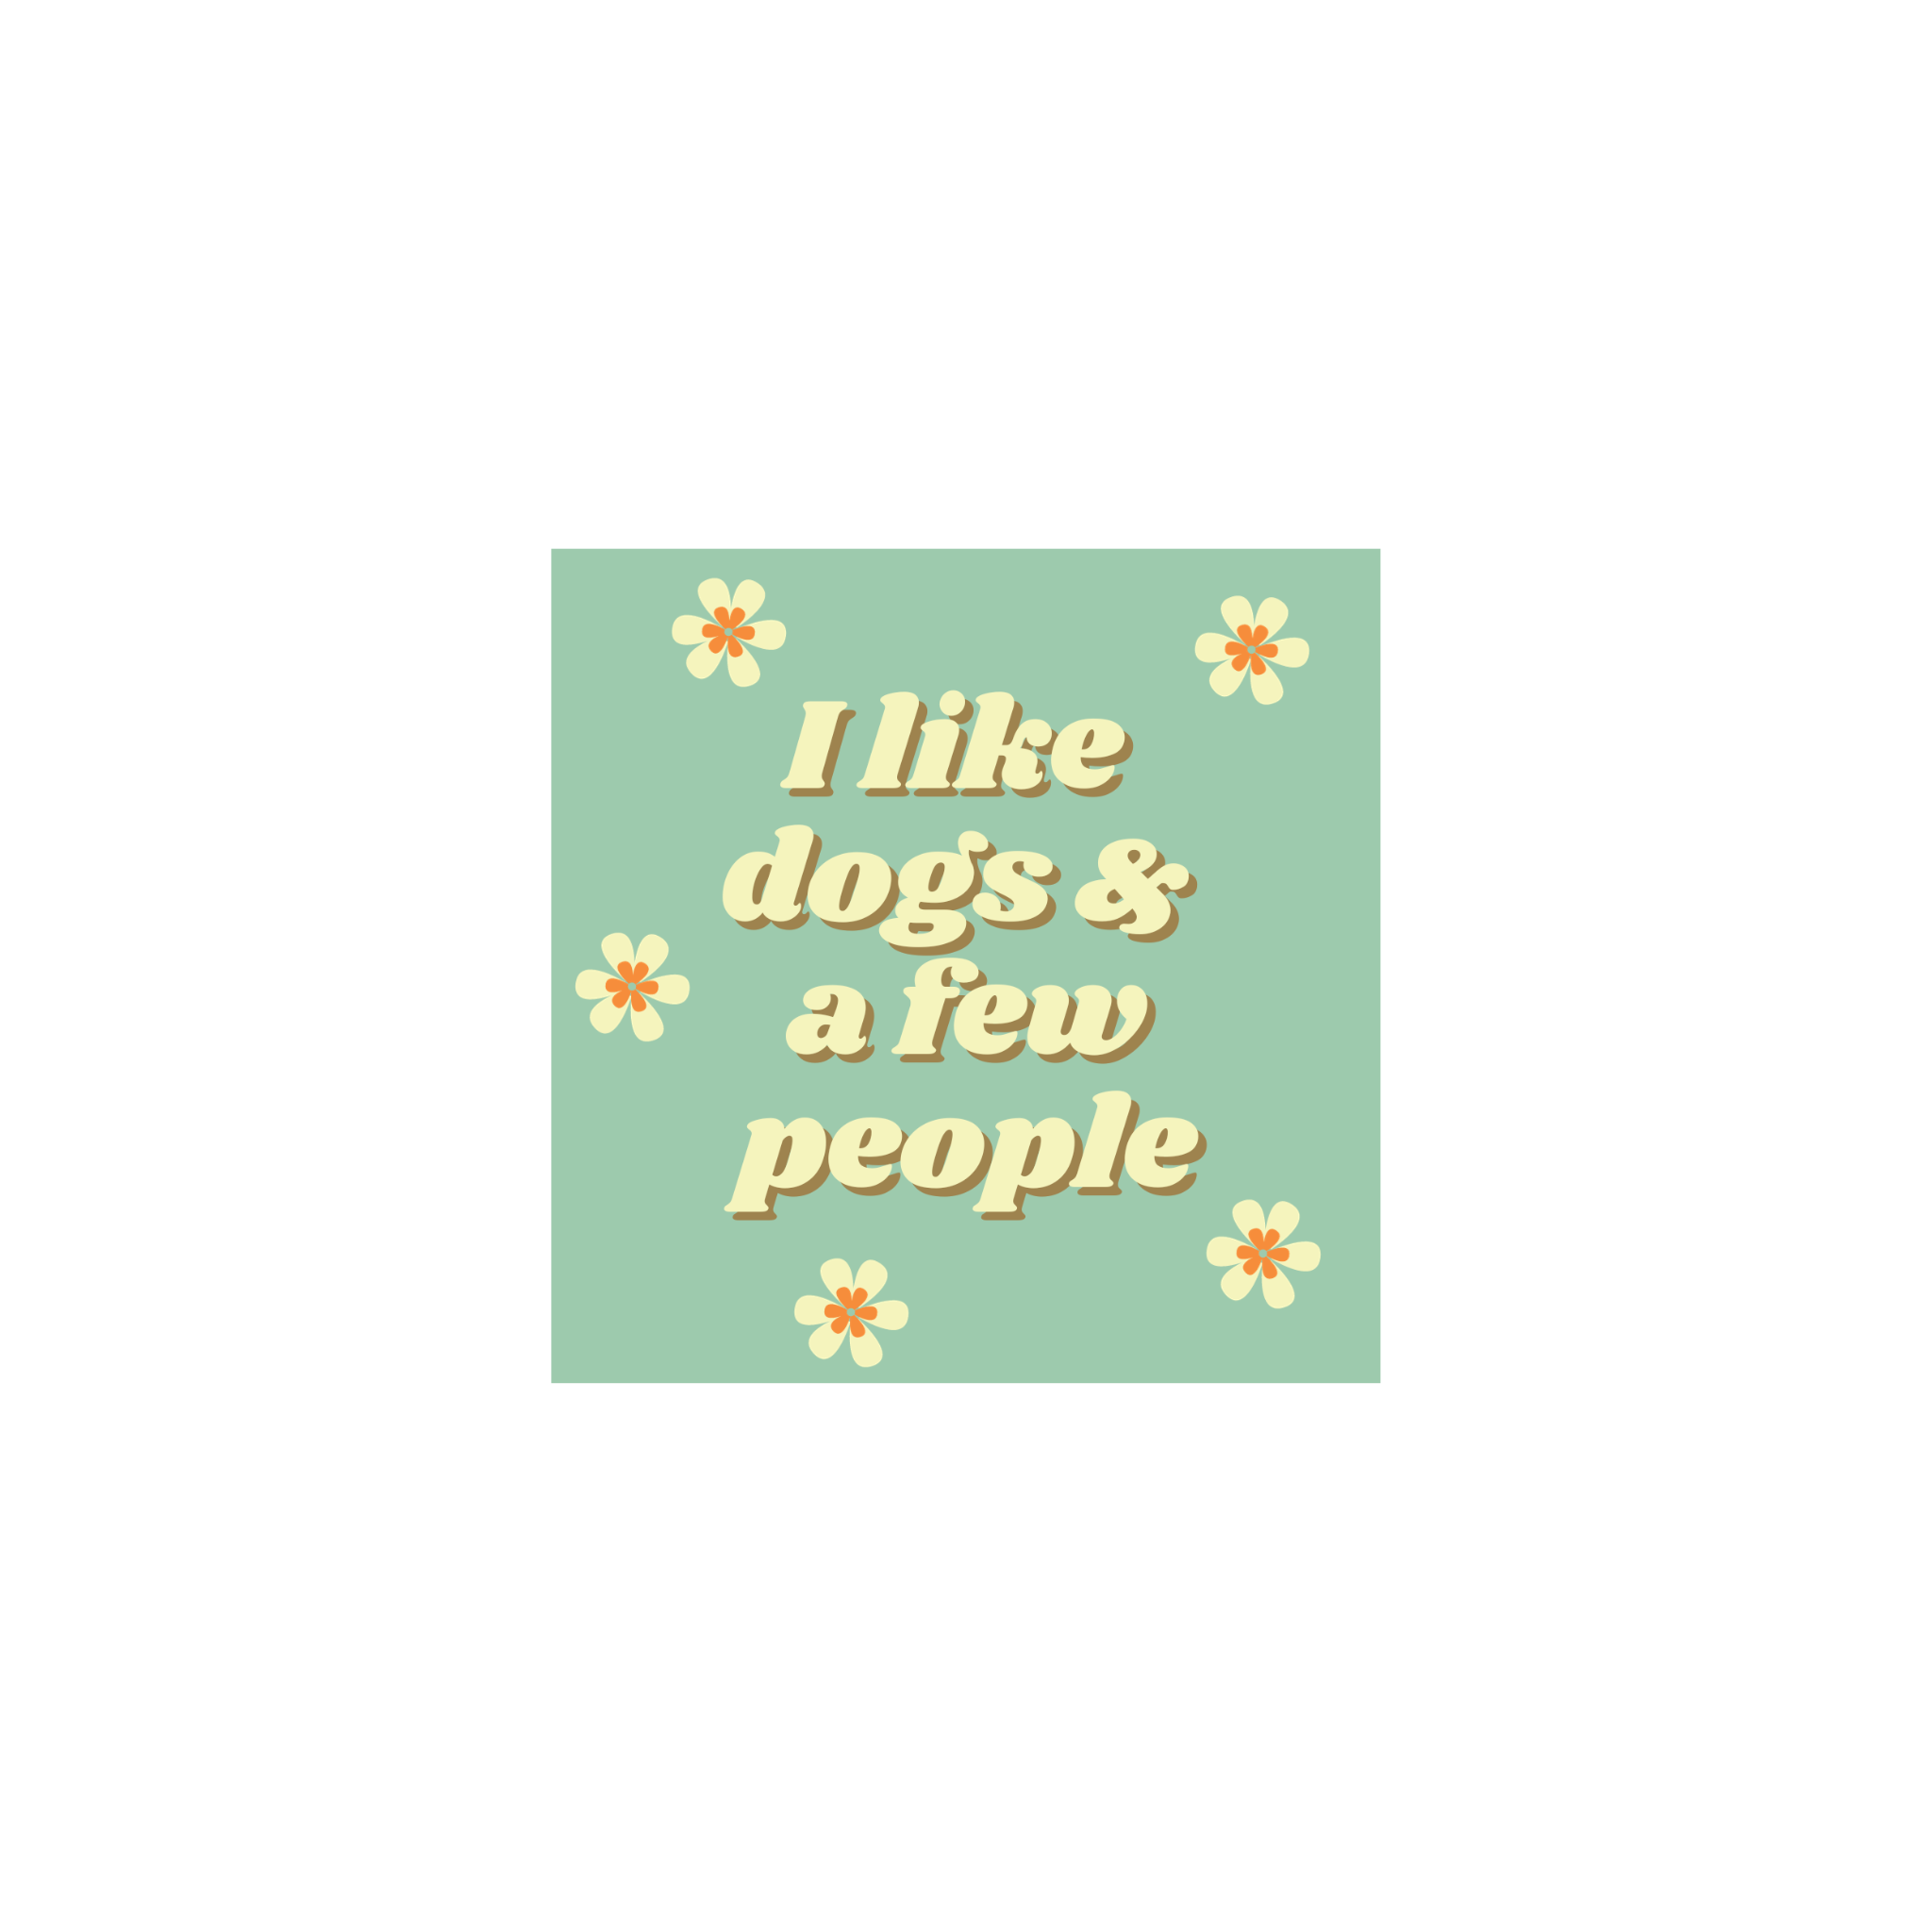 I Like Dogs & A Few People- Vinyl Sticker